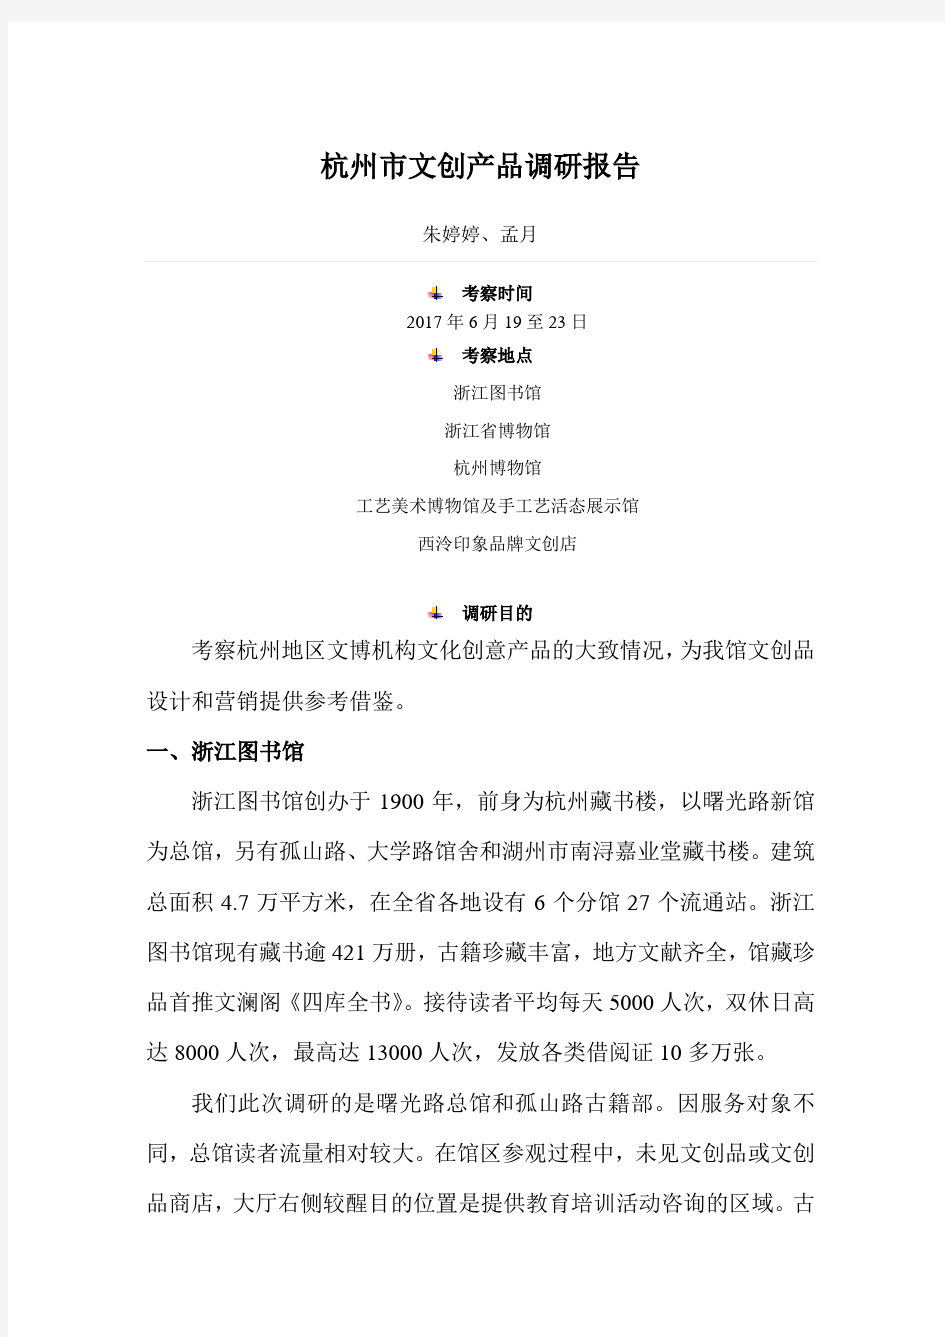 杭州市文创产品调研报告 - nlc